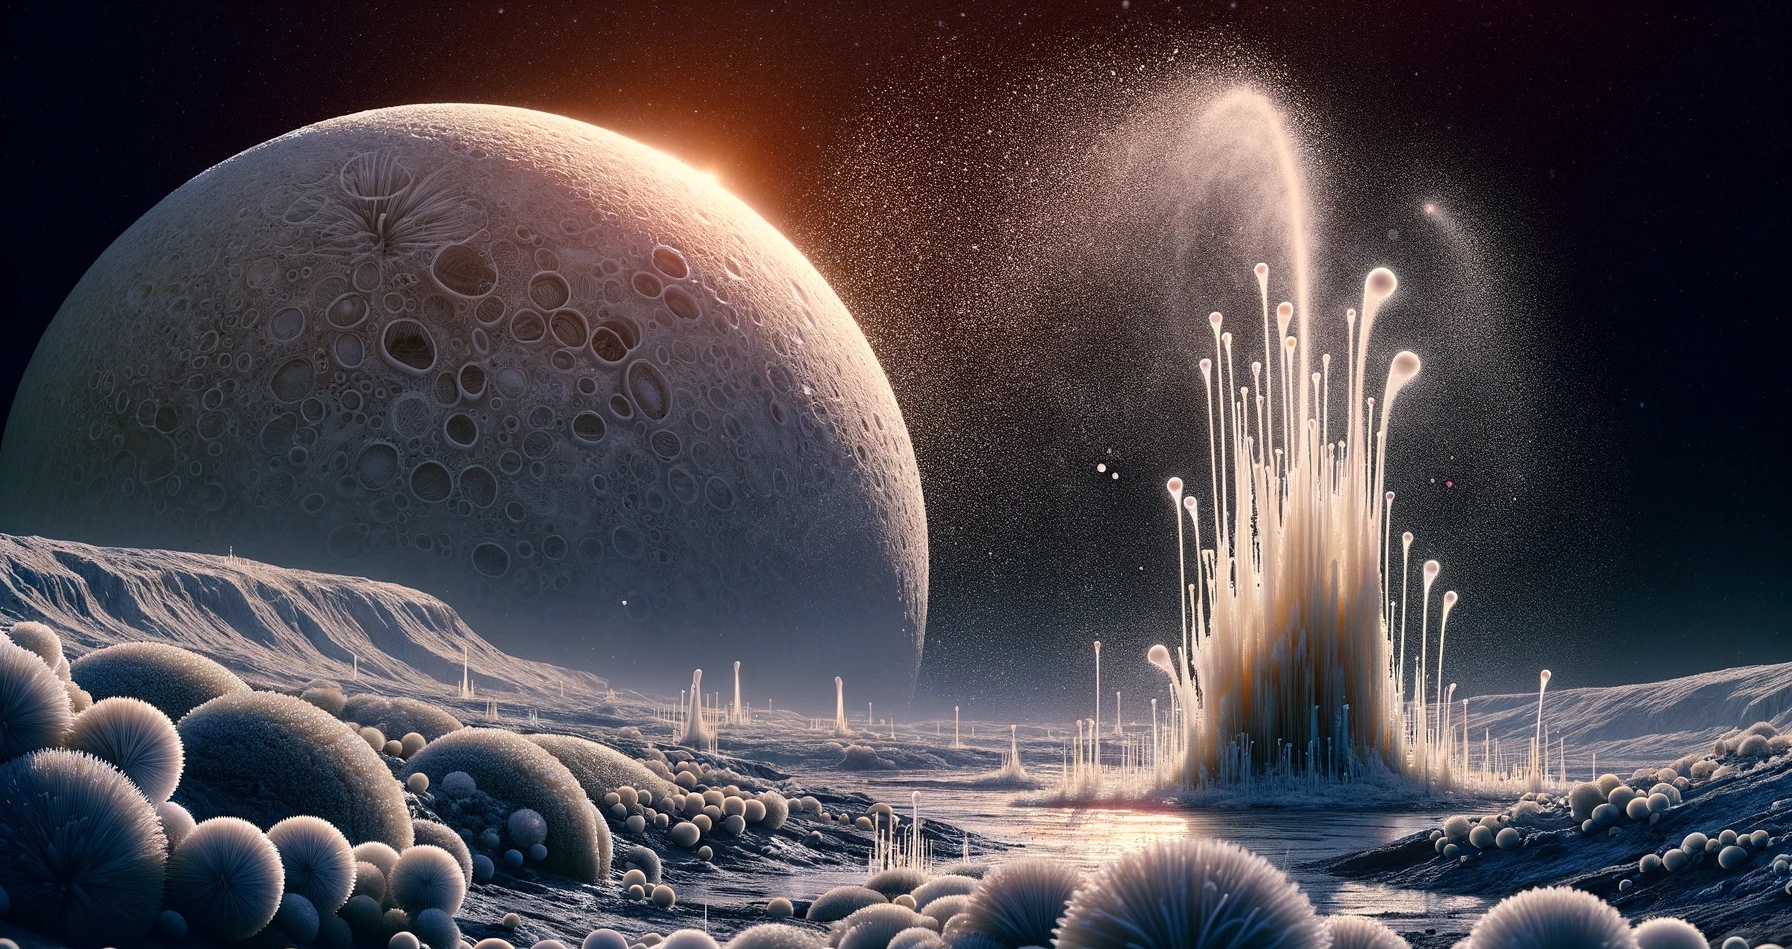 Illustration générée à l'aide d'une IA de geysers jaillissant de la surface d'un monde potentiellement habitable comme Encelade ou Europe, respectivement lune de Saturne et Jupiter. © XD, Futura avec DALL-E